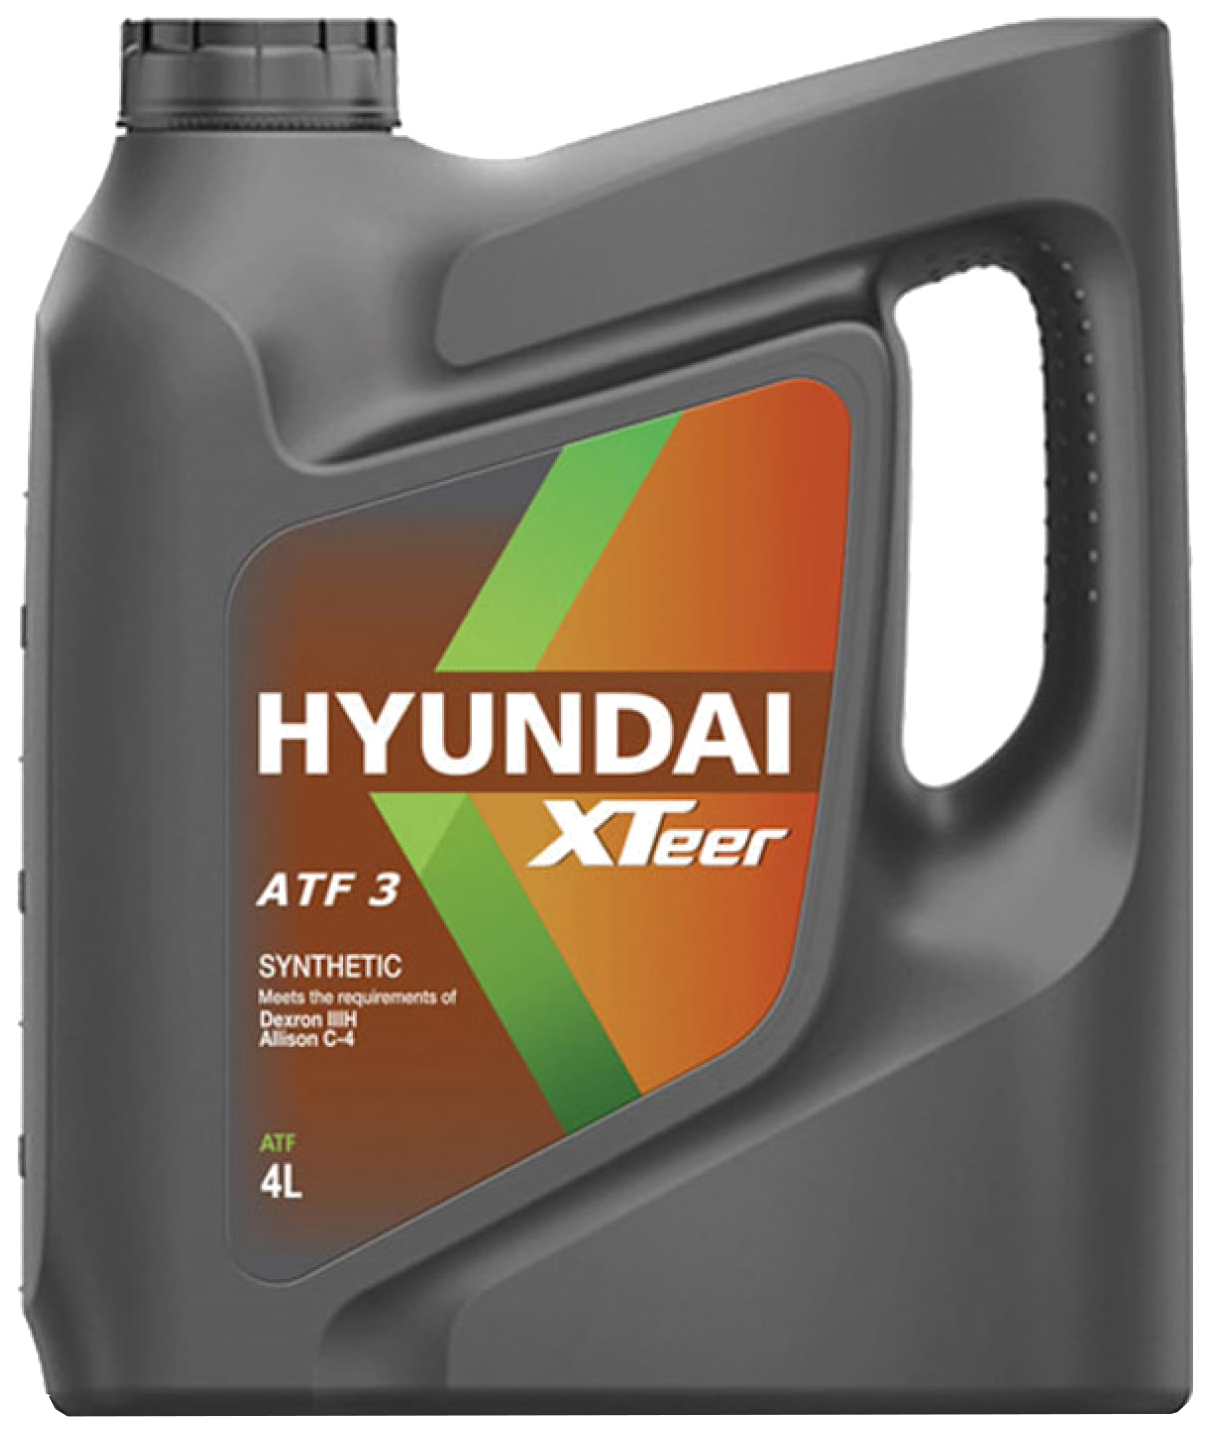 Жидкость Для Акпп Hyundai Xteer Atf 3 4l Масло Трансмиссионное Hyundai-KIA, 1041009